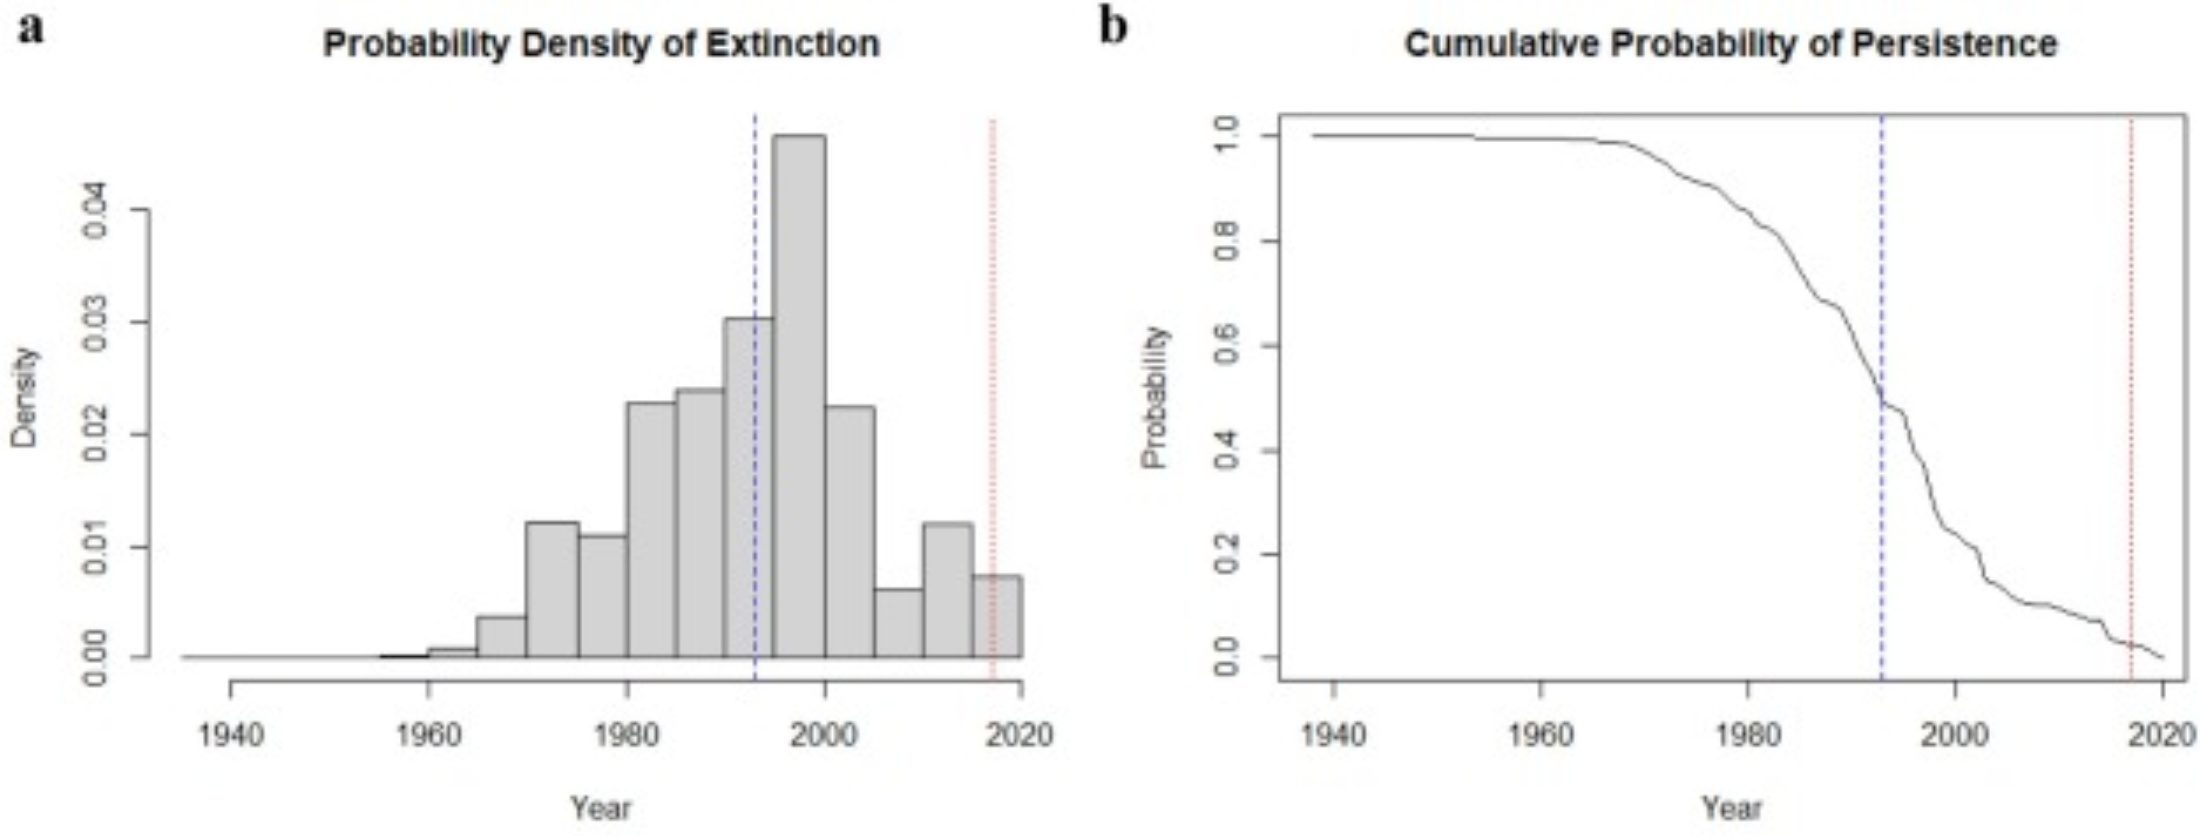 Ημερομηνίες εξαφάνισης όπως προέκυψαν από τις προσομοιώσεις για το είδος Thylacine στην Τασμανία, χρησιμοποιώντας και τις 1237 ποιοτικές καταγραφές εντοπισμού. Το a απεικονίζει την κατανομή πυκνότητας των πιθανοτήτων εξαφάνισης συναρτήσει των ημερολογιακών ετών Το b απεικονίζει την αθροιστική πιθανότητα διατήρησης του είδους για κάθε ημερολογιακό έτος, βάσει της κατανομής του α ( (Credit: Barry W. Brook, Stephen R. Sleightholme, Cameron R. Campbell, Ivan Jarić, Jessie C. Buettel, Resolving when (and where) the Thylacine went extinct, Science of The Total Environment, Volume 877, 2023, 162878, ISSN 0048-9697, (https://doi.org/10.1016/j.scitotenv.2023.162878.)